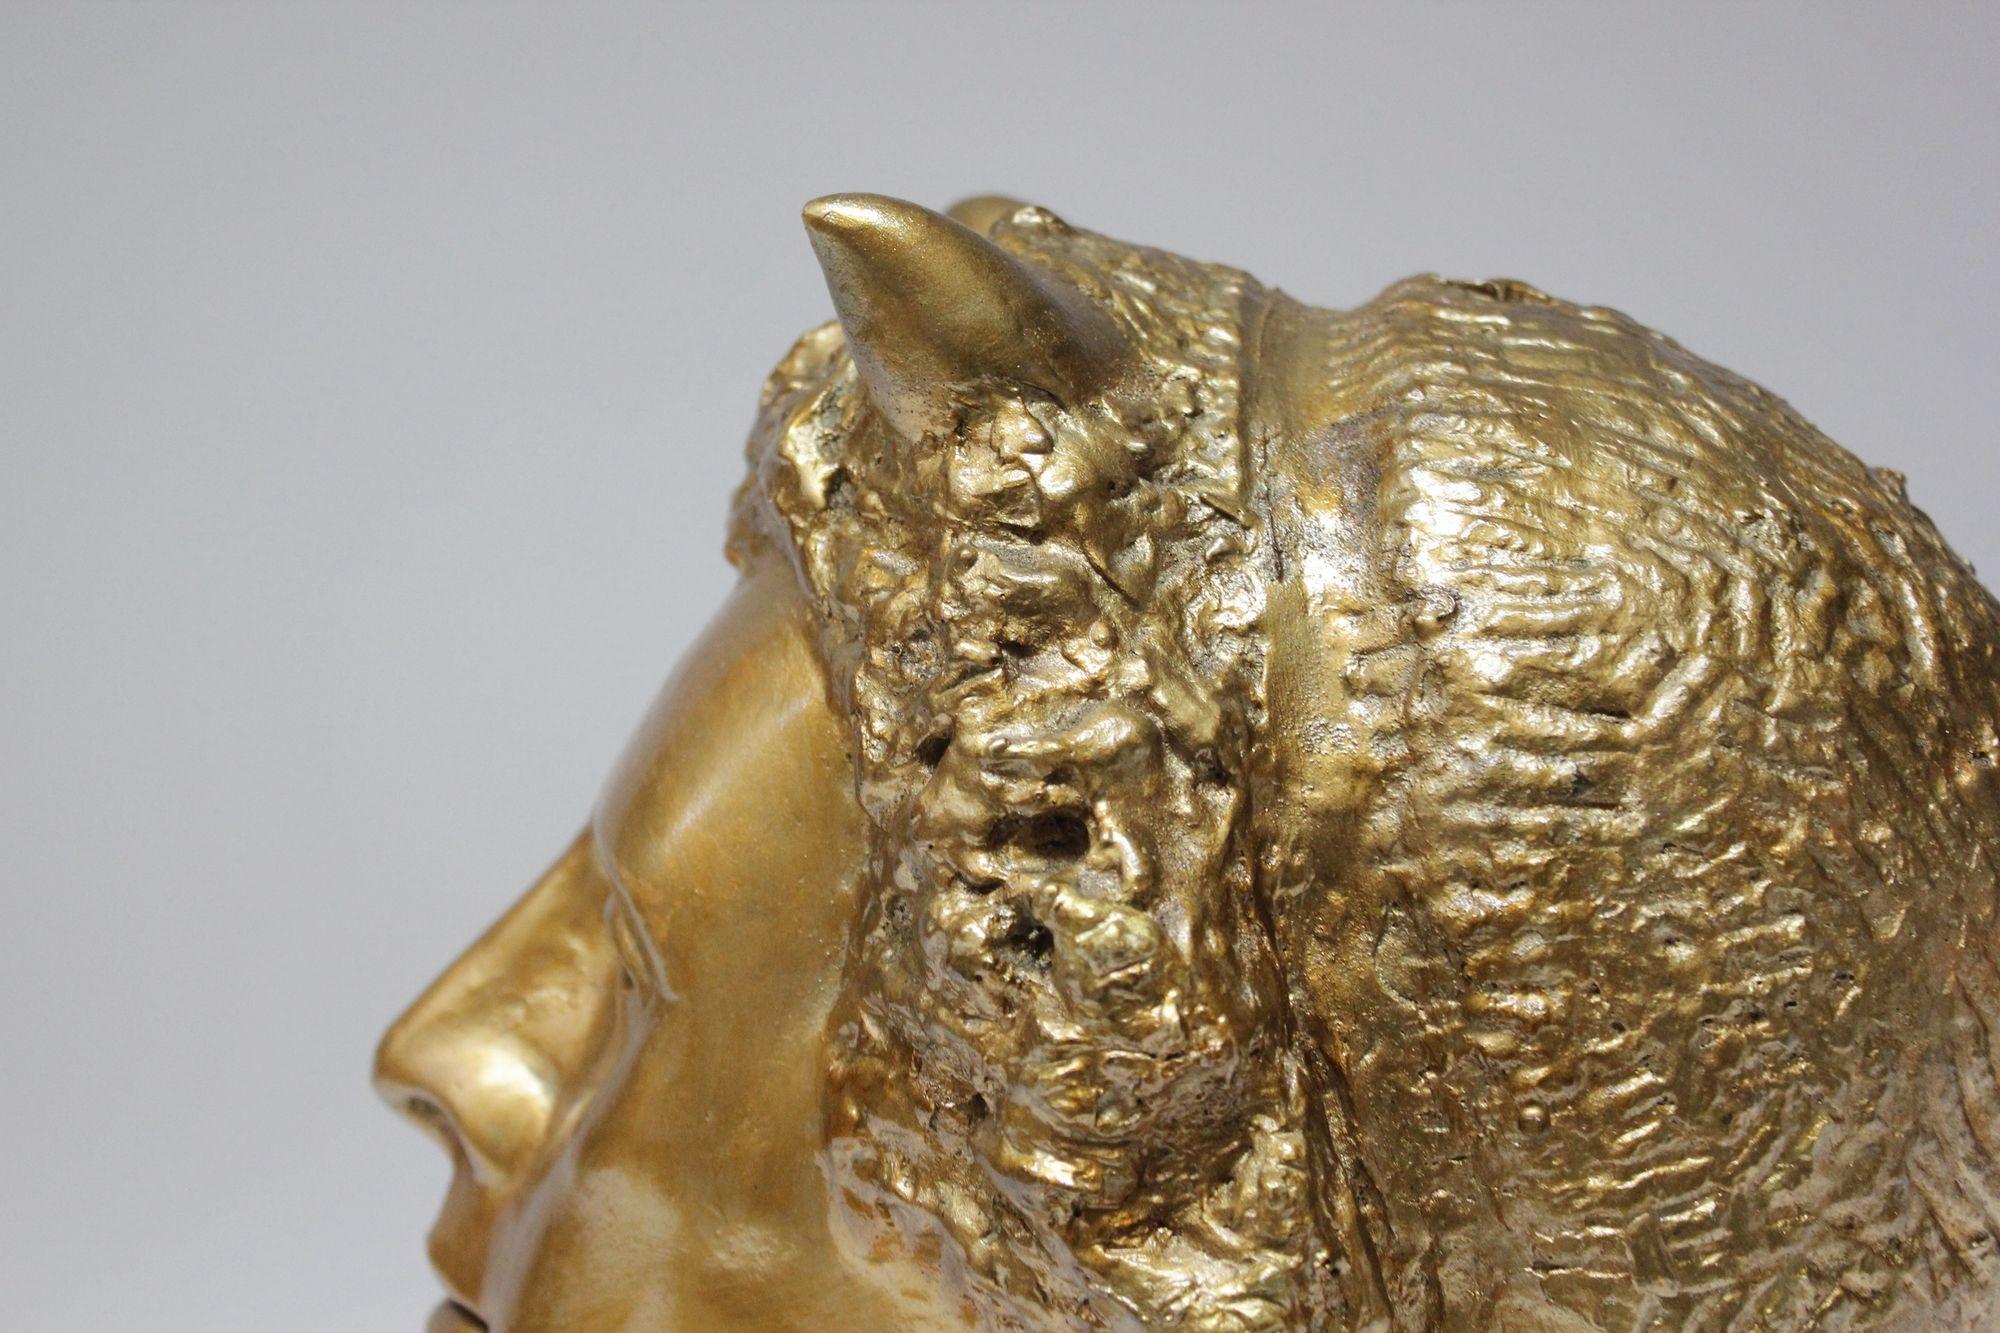 Vintage Sculpture / Bust of Mythological Deity 